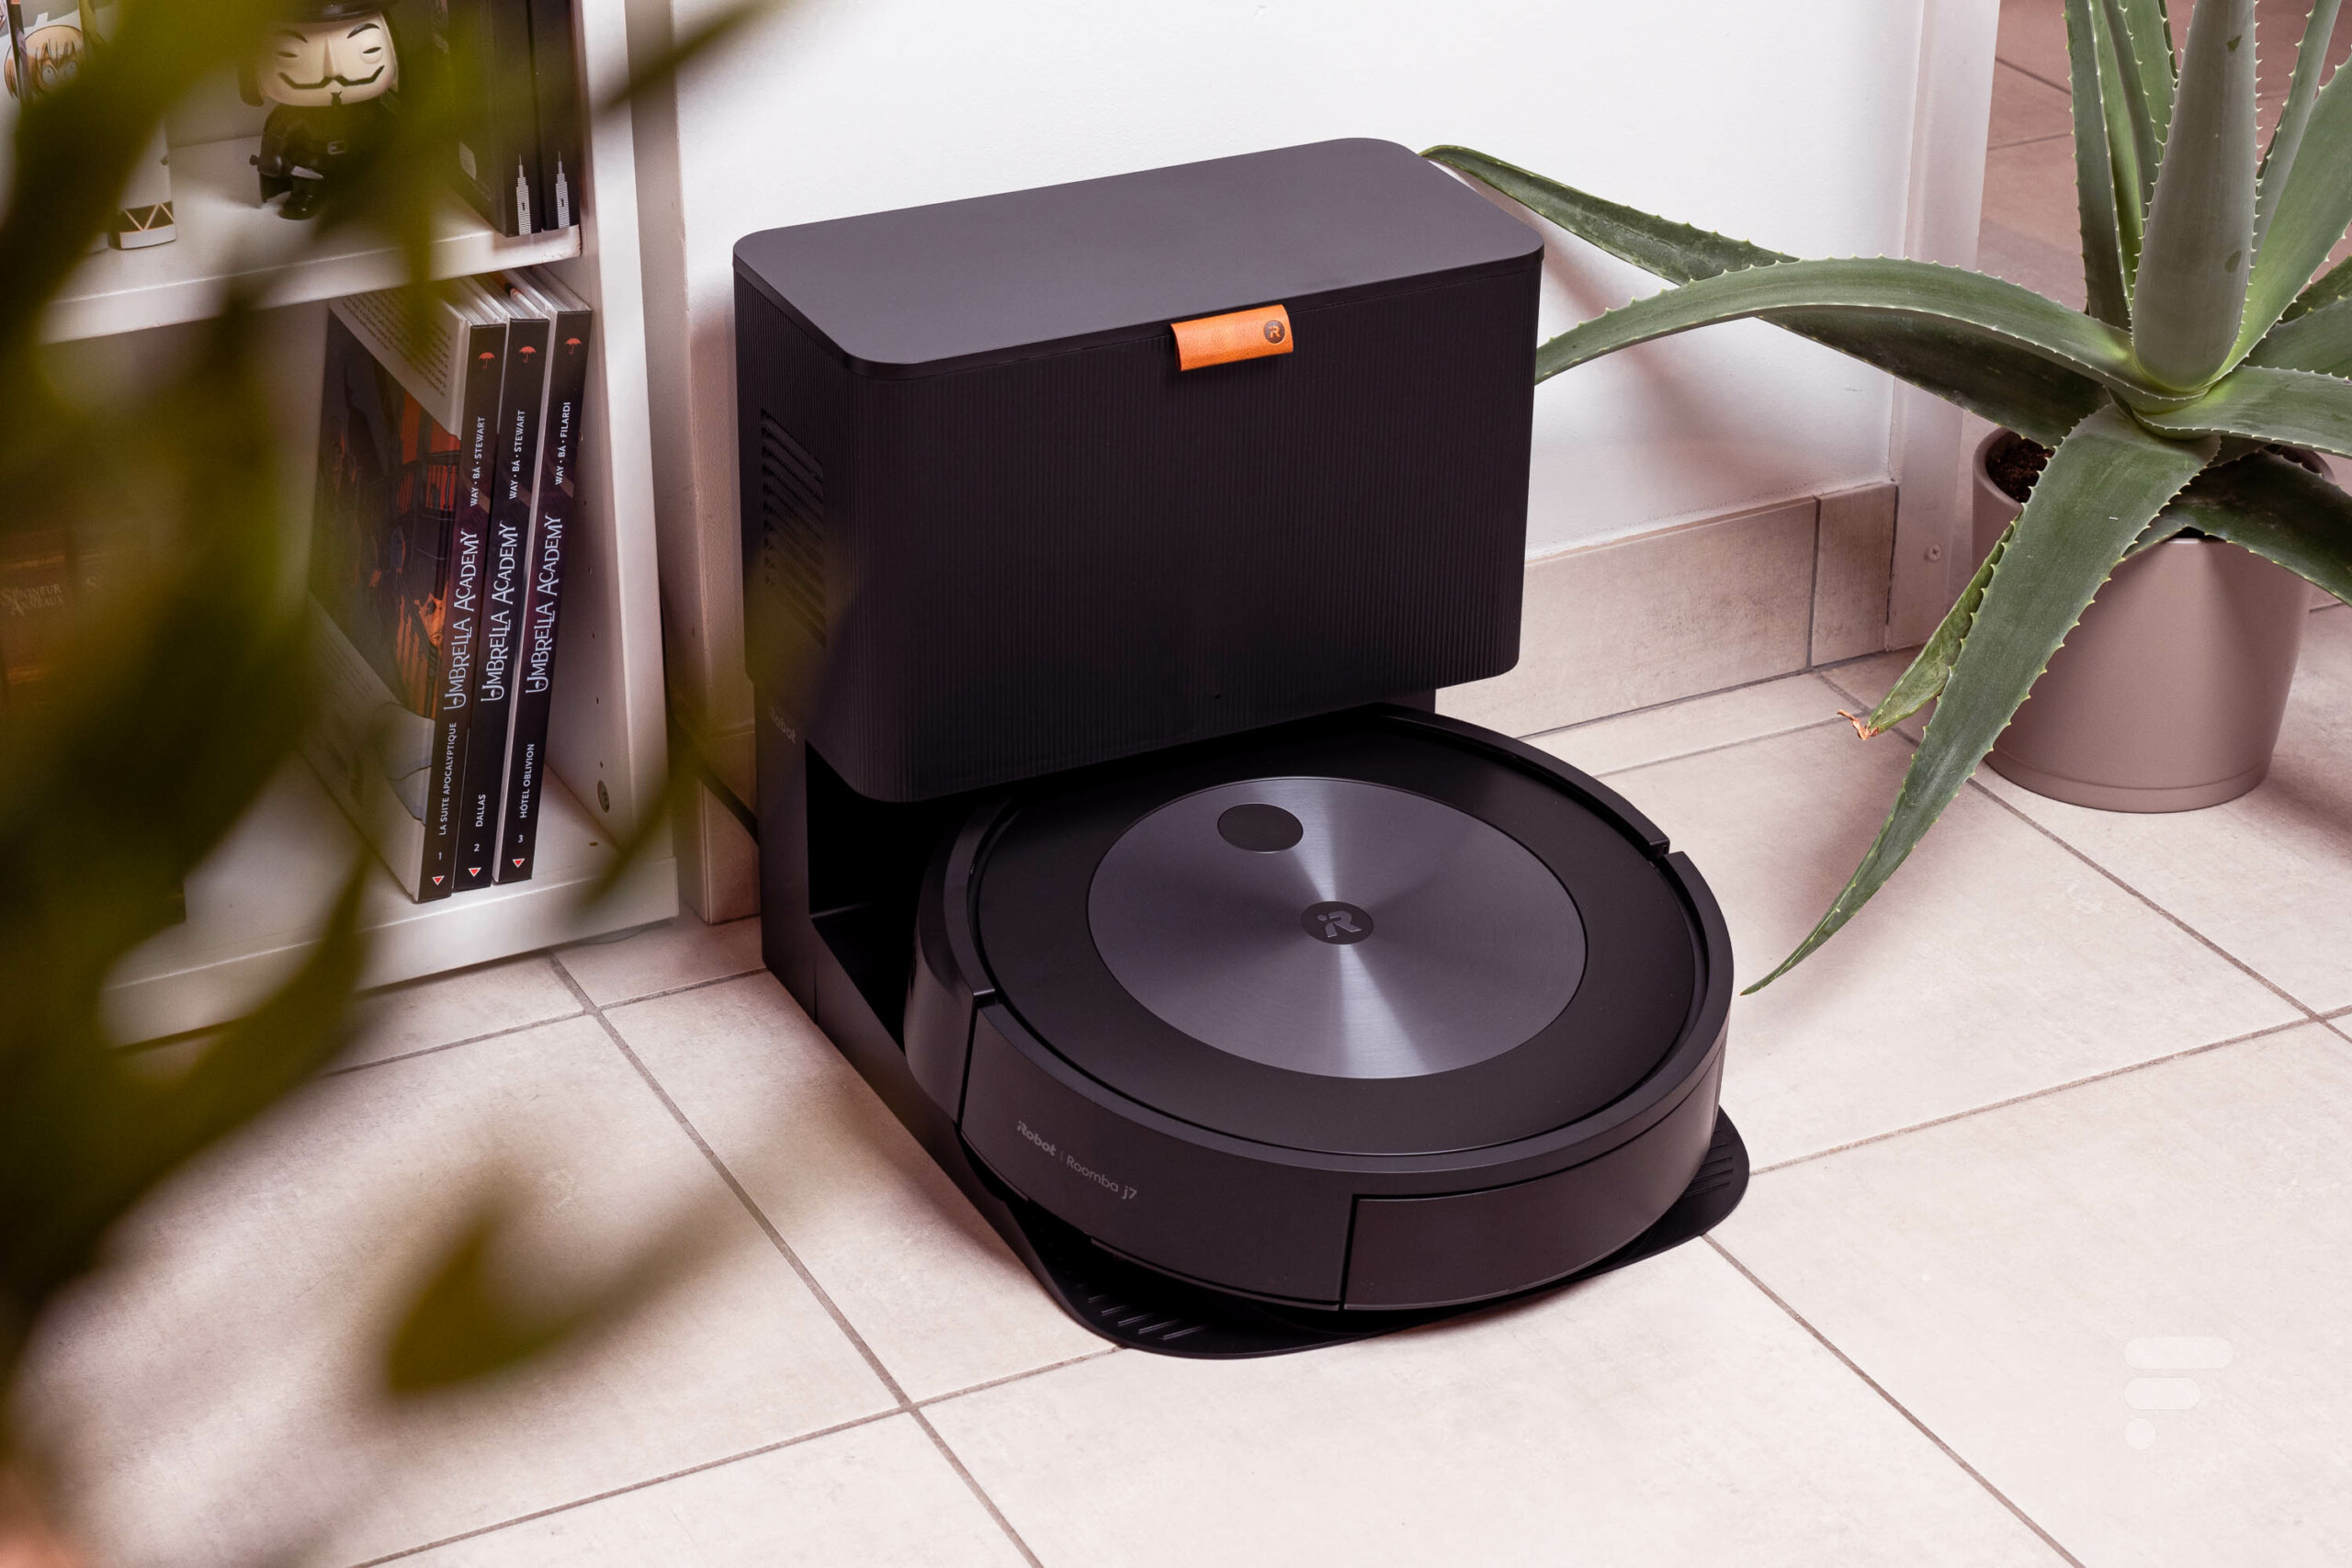 Aspirateur iRobot Roomba i7 : le ménage efficace et facile avec Carrefour